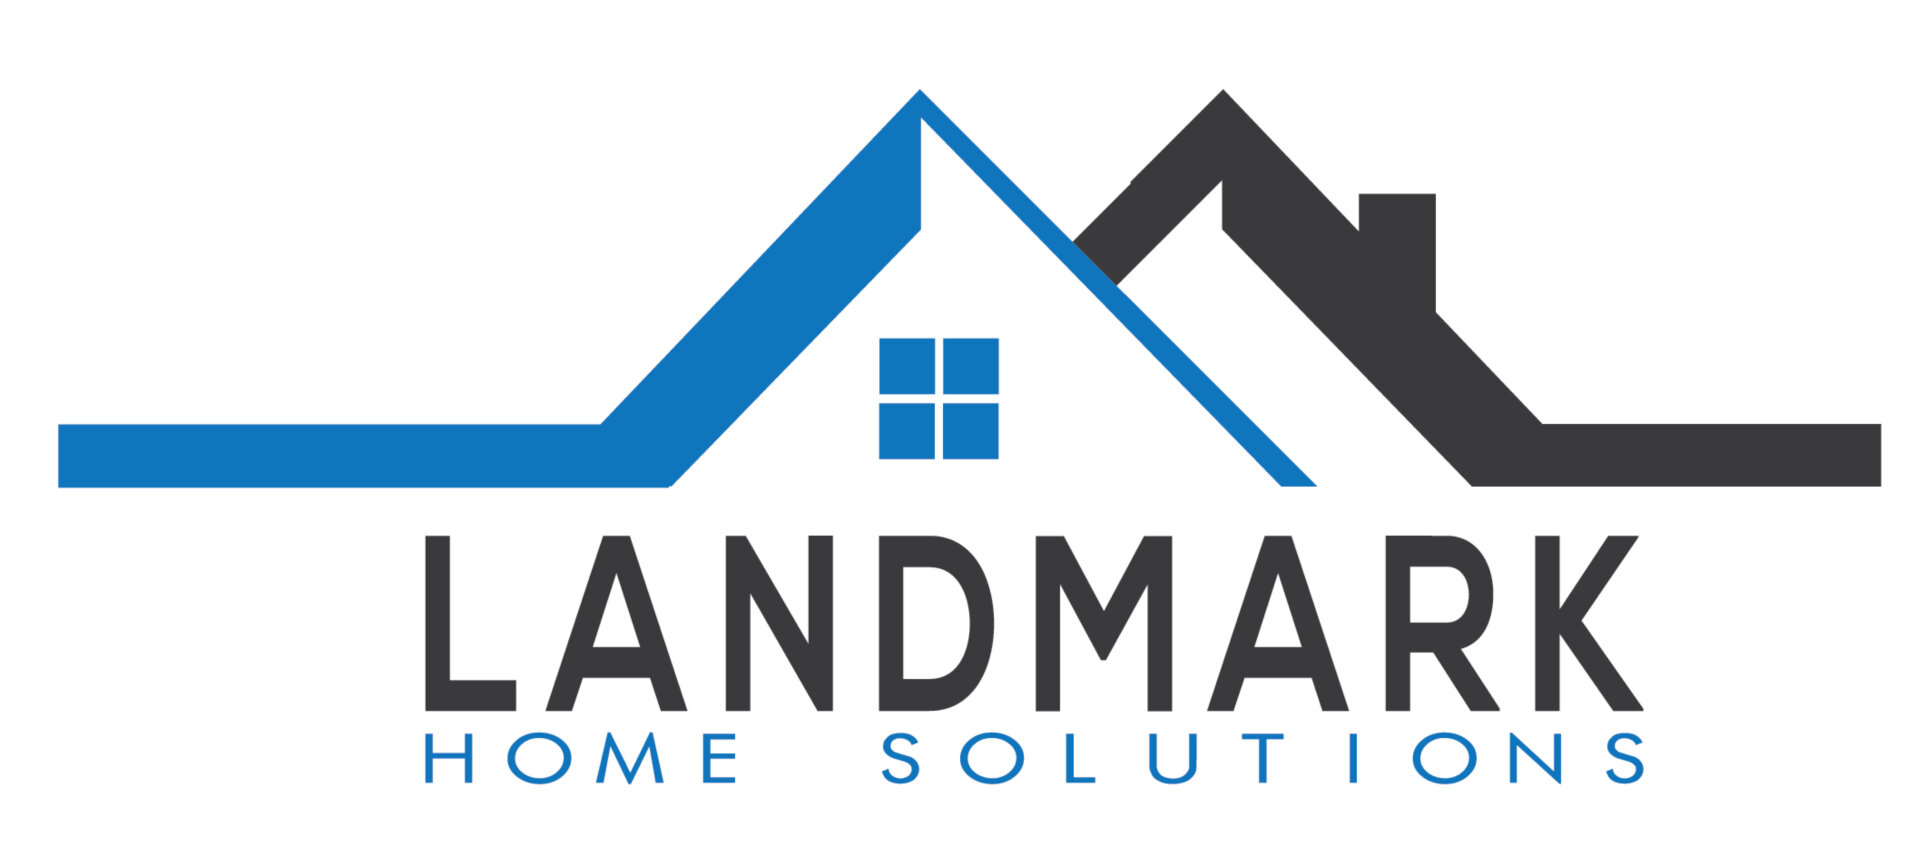 Landmark Home Solutions, LLC logo